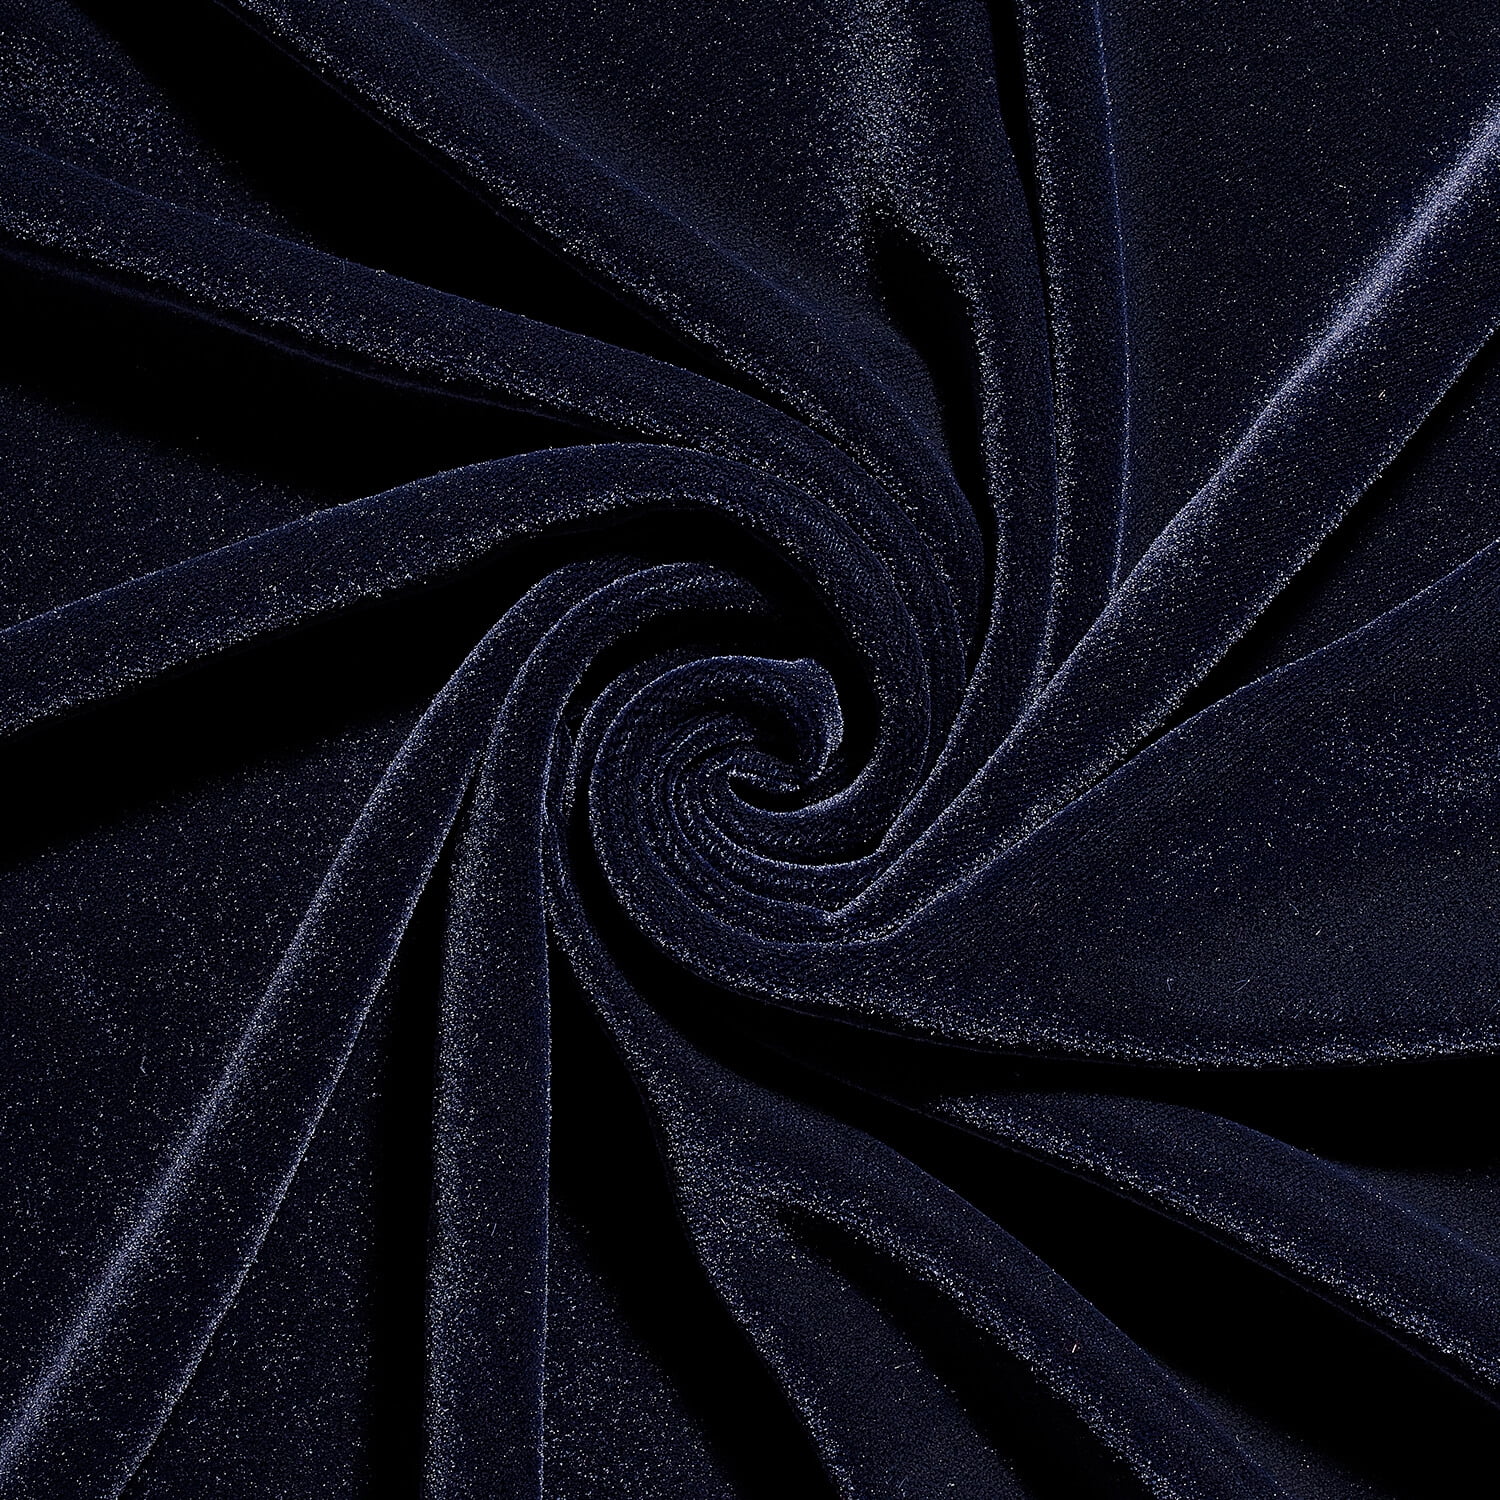 Royal Blue Decor Velvet Fabric Soft Strong Velour Material 